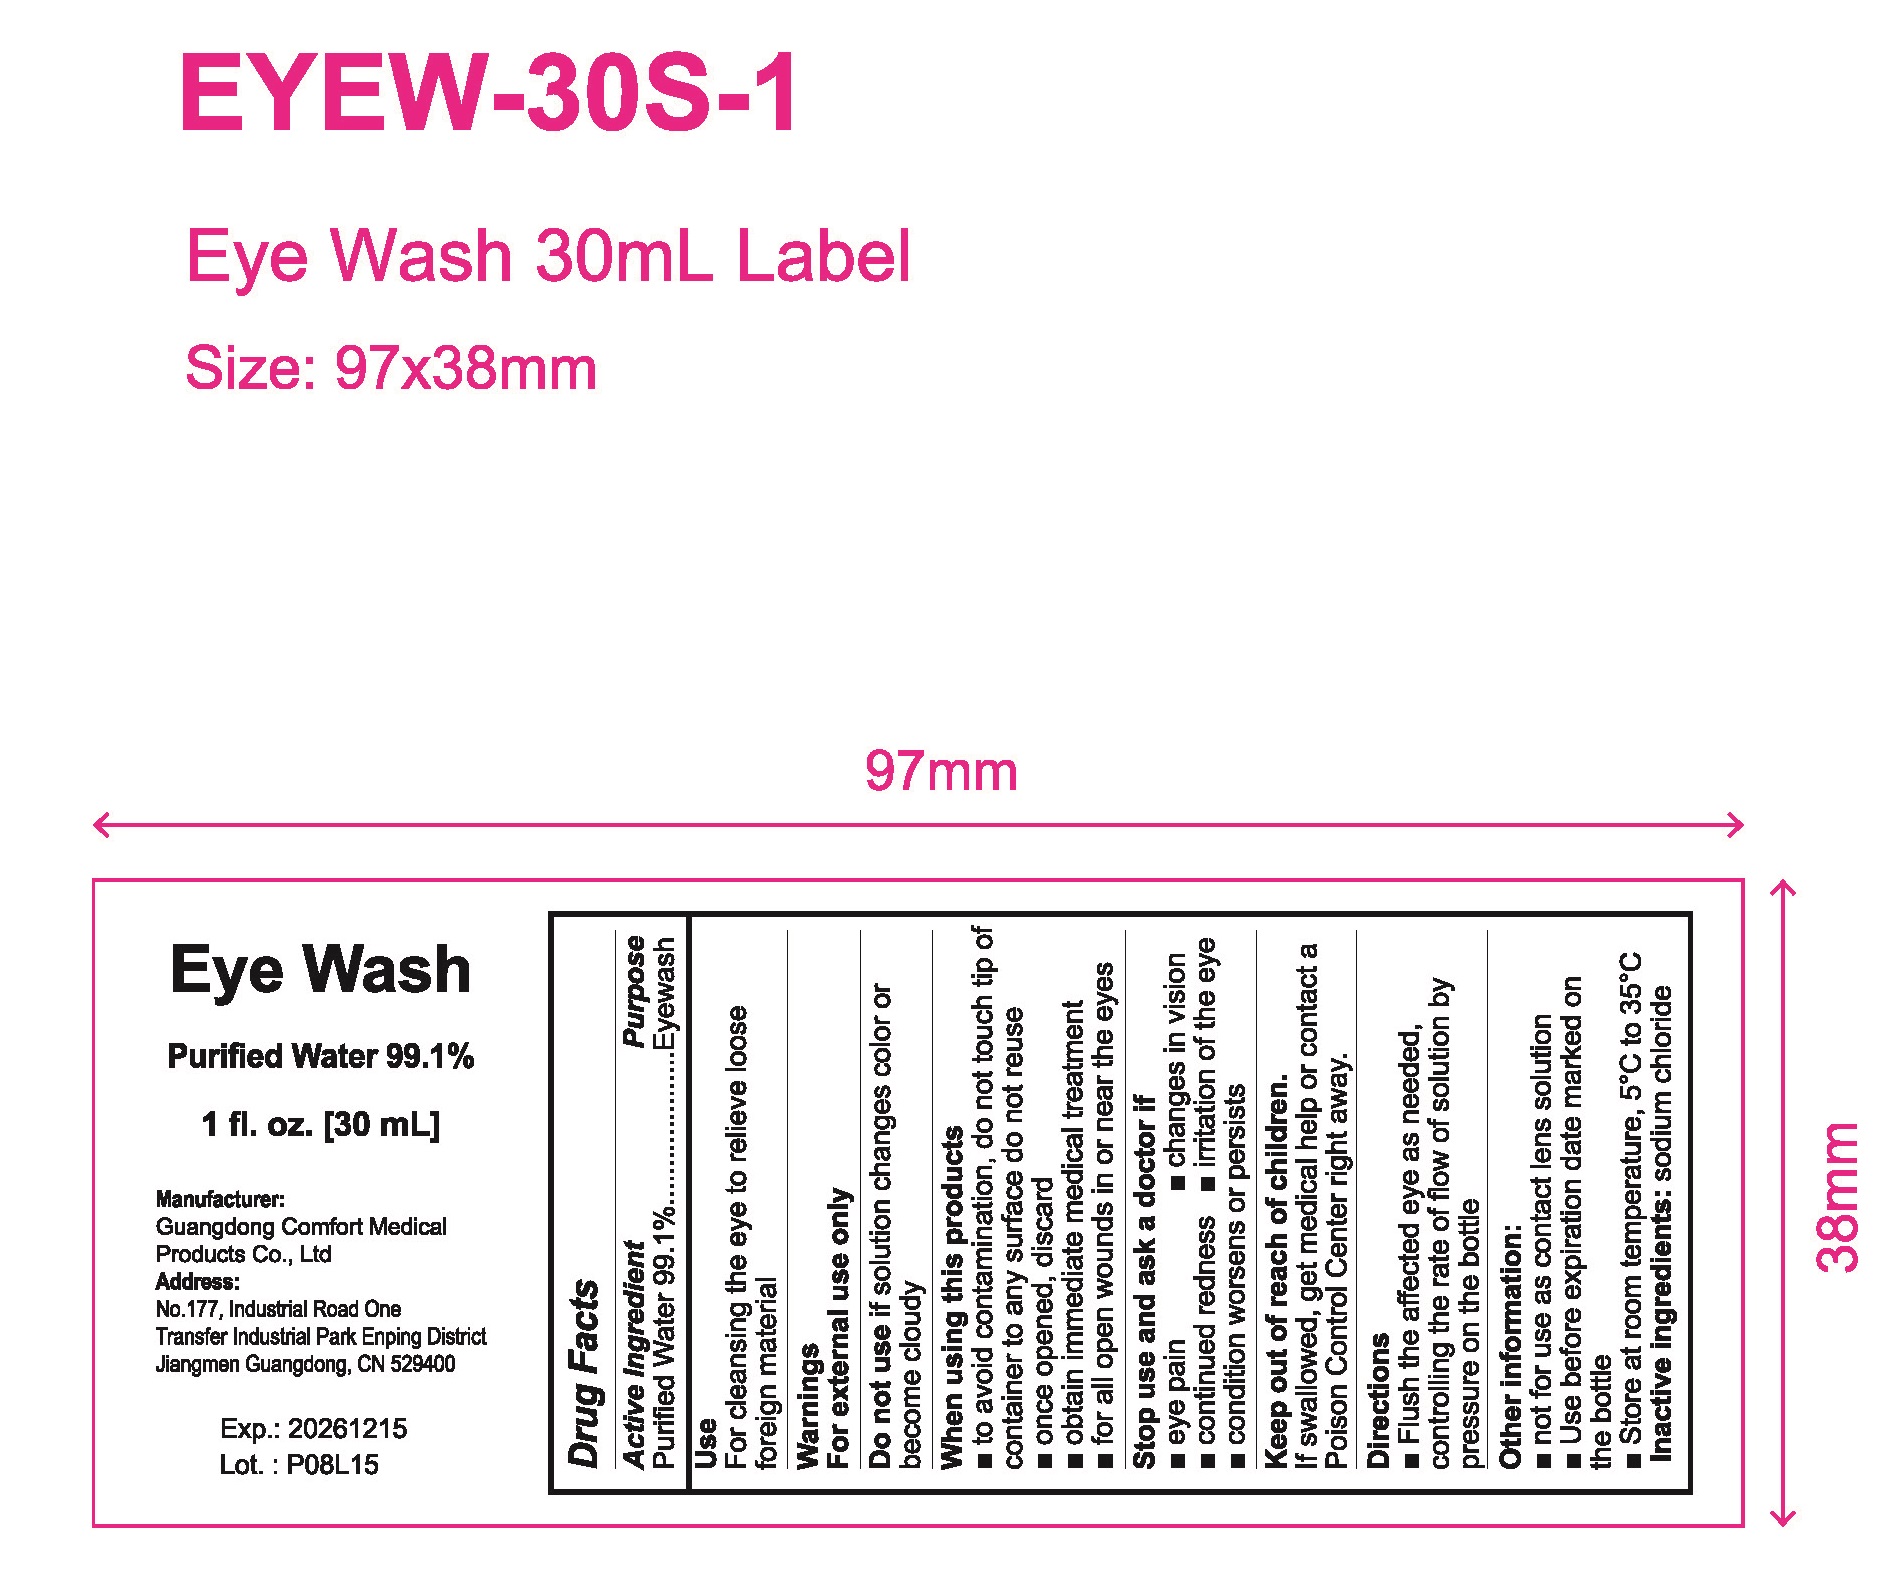 eyewash-3